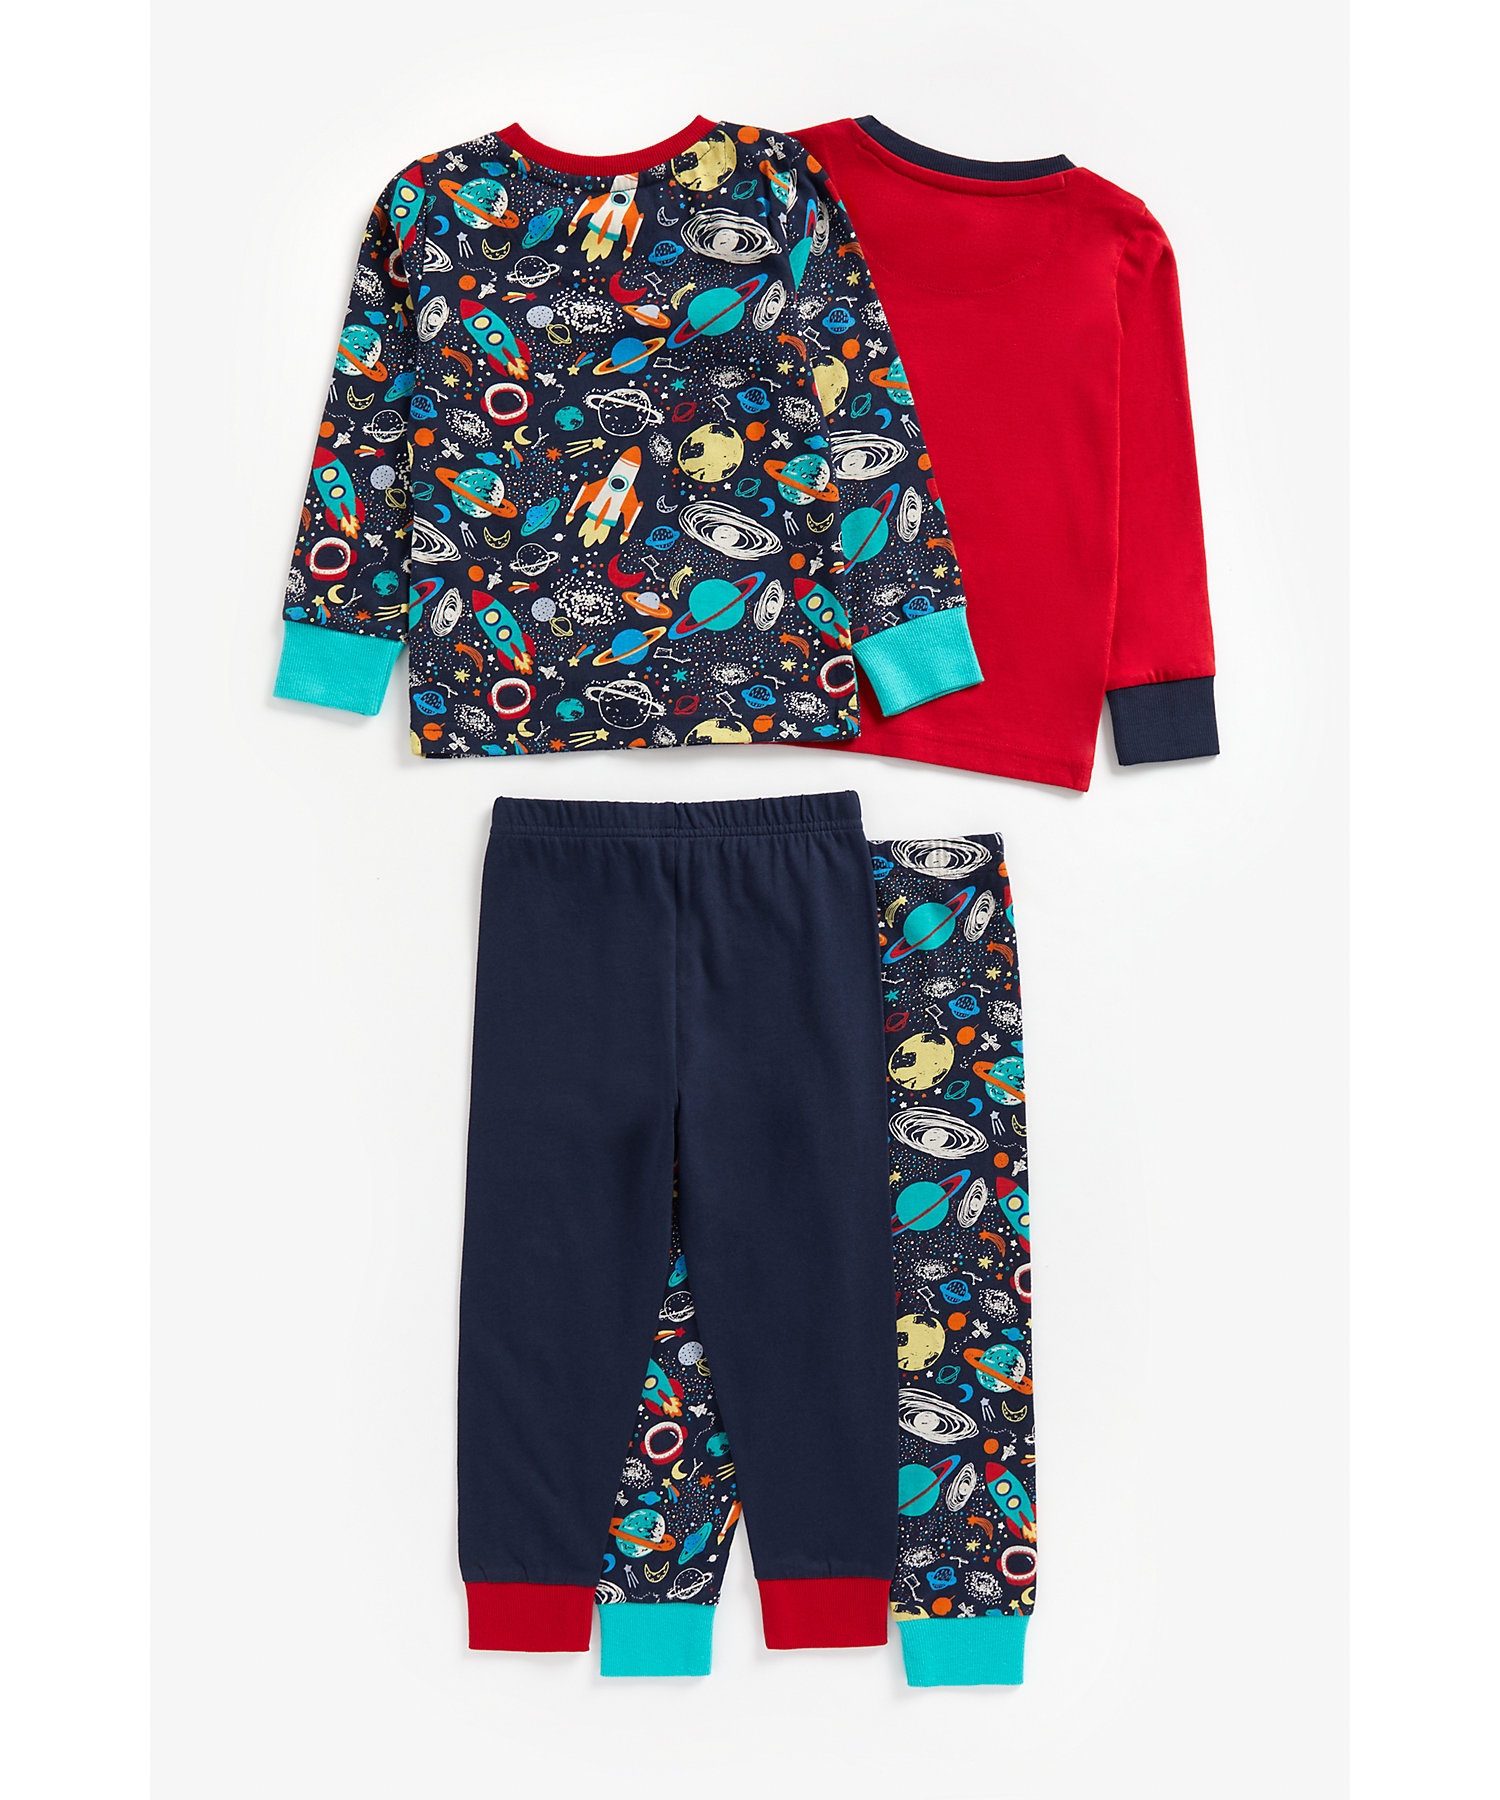 Boys Full Sleeves Pyjama Set Space Print-Pack of 2-Multicolor